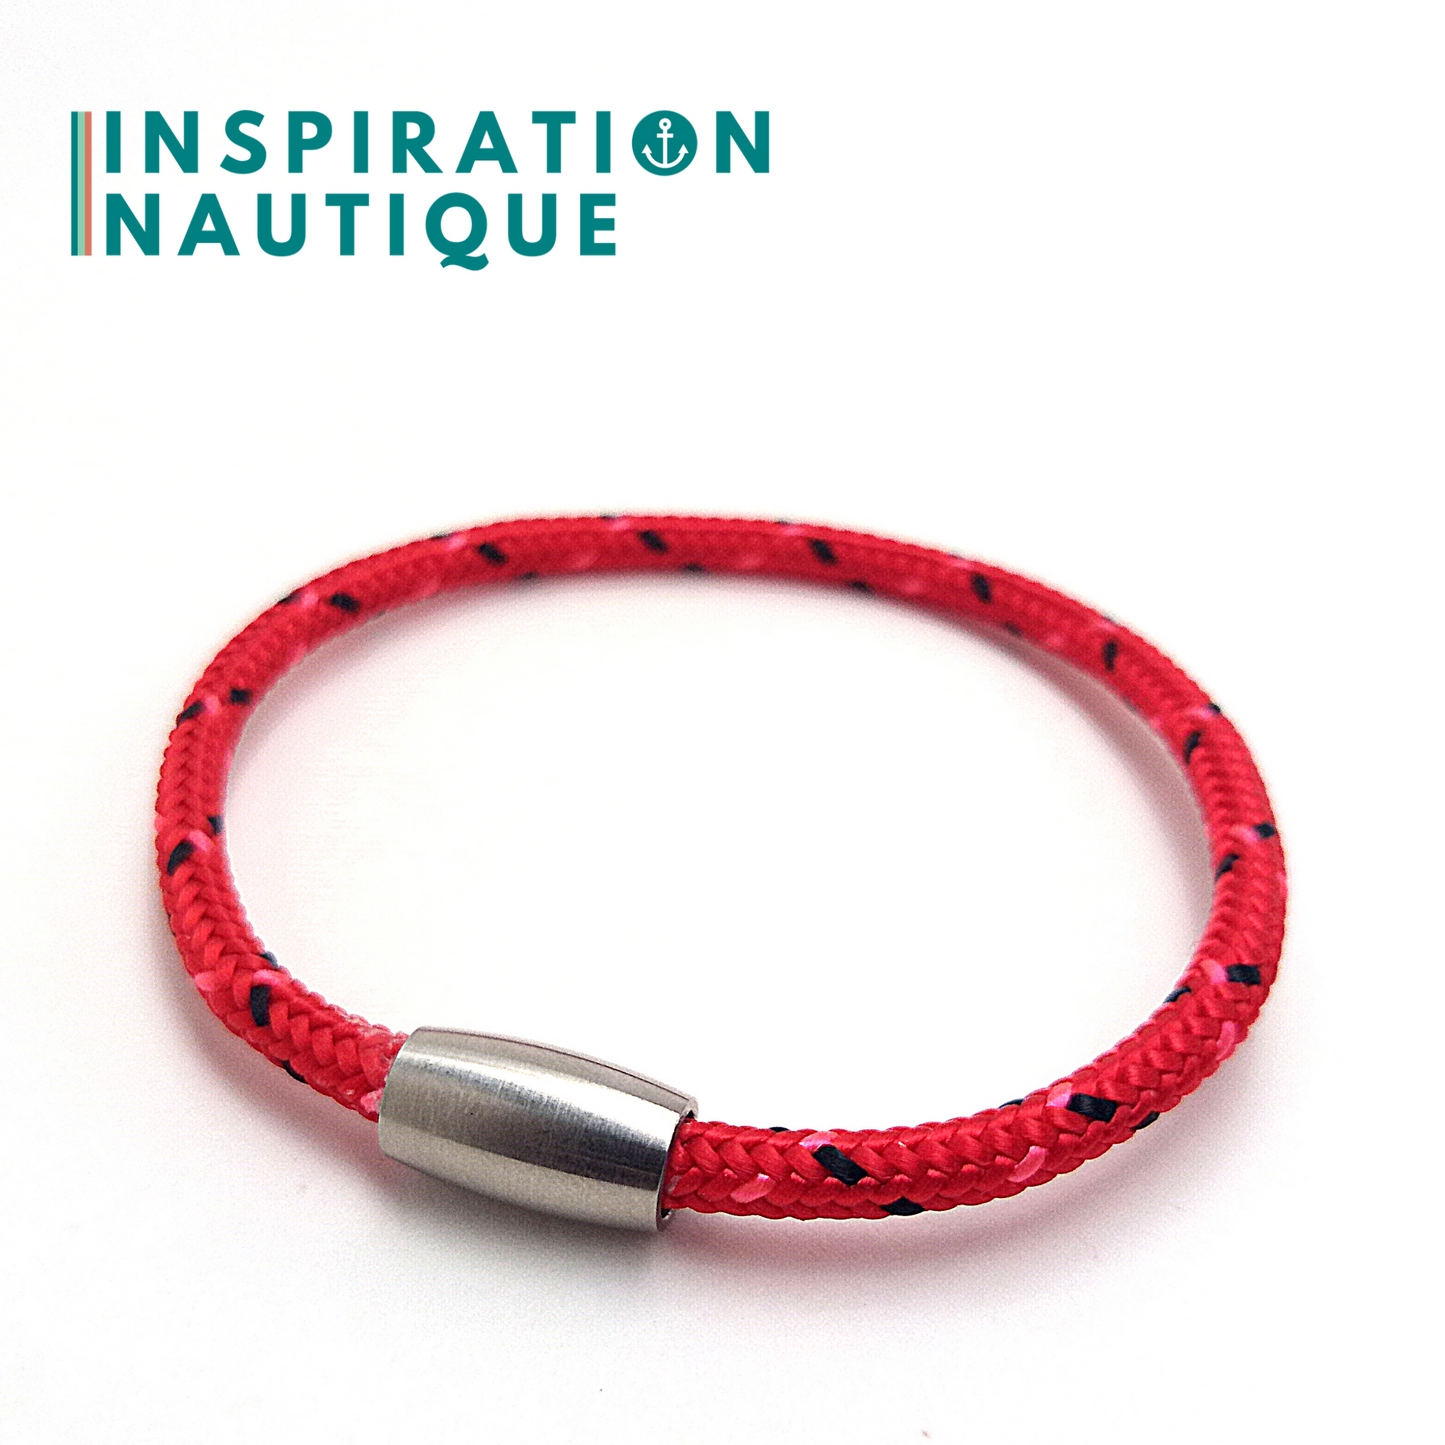 Bracelet simple avec aimant en cordage de bateau et acier inoxydable, Rouge avec traceurs noir et rose, X-Small-Small